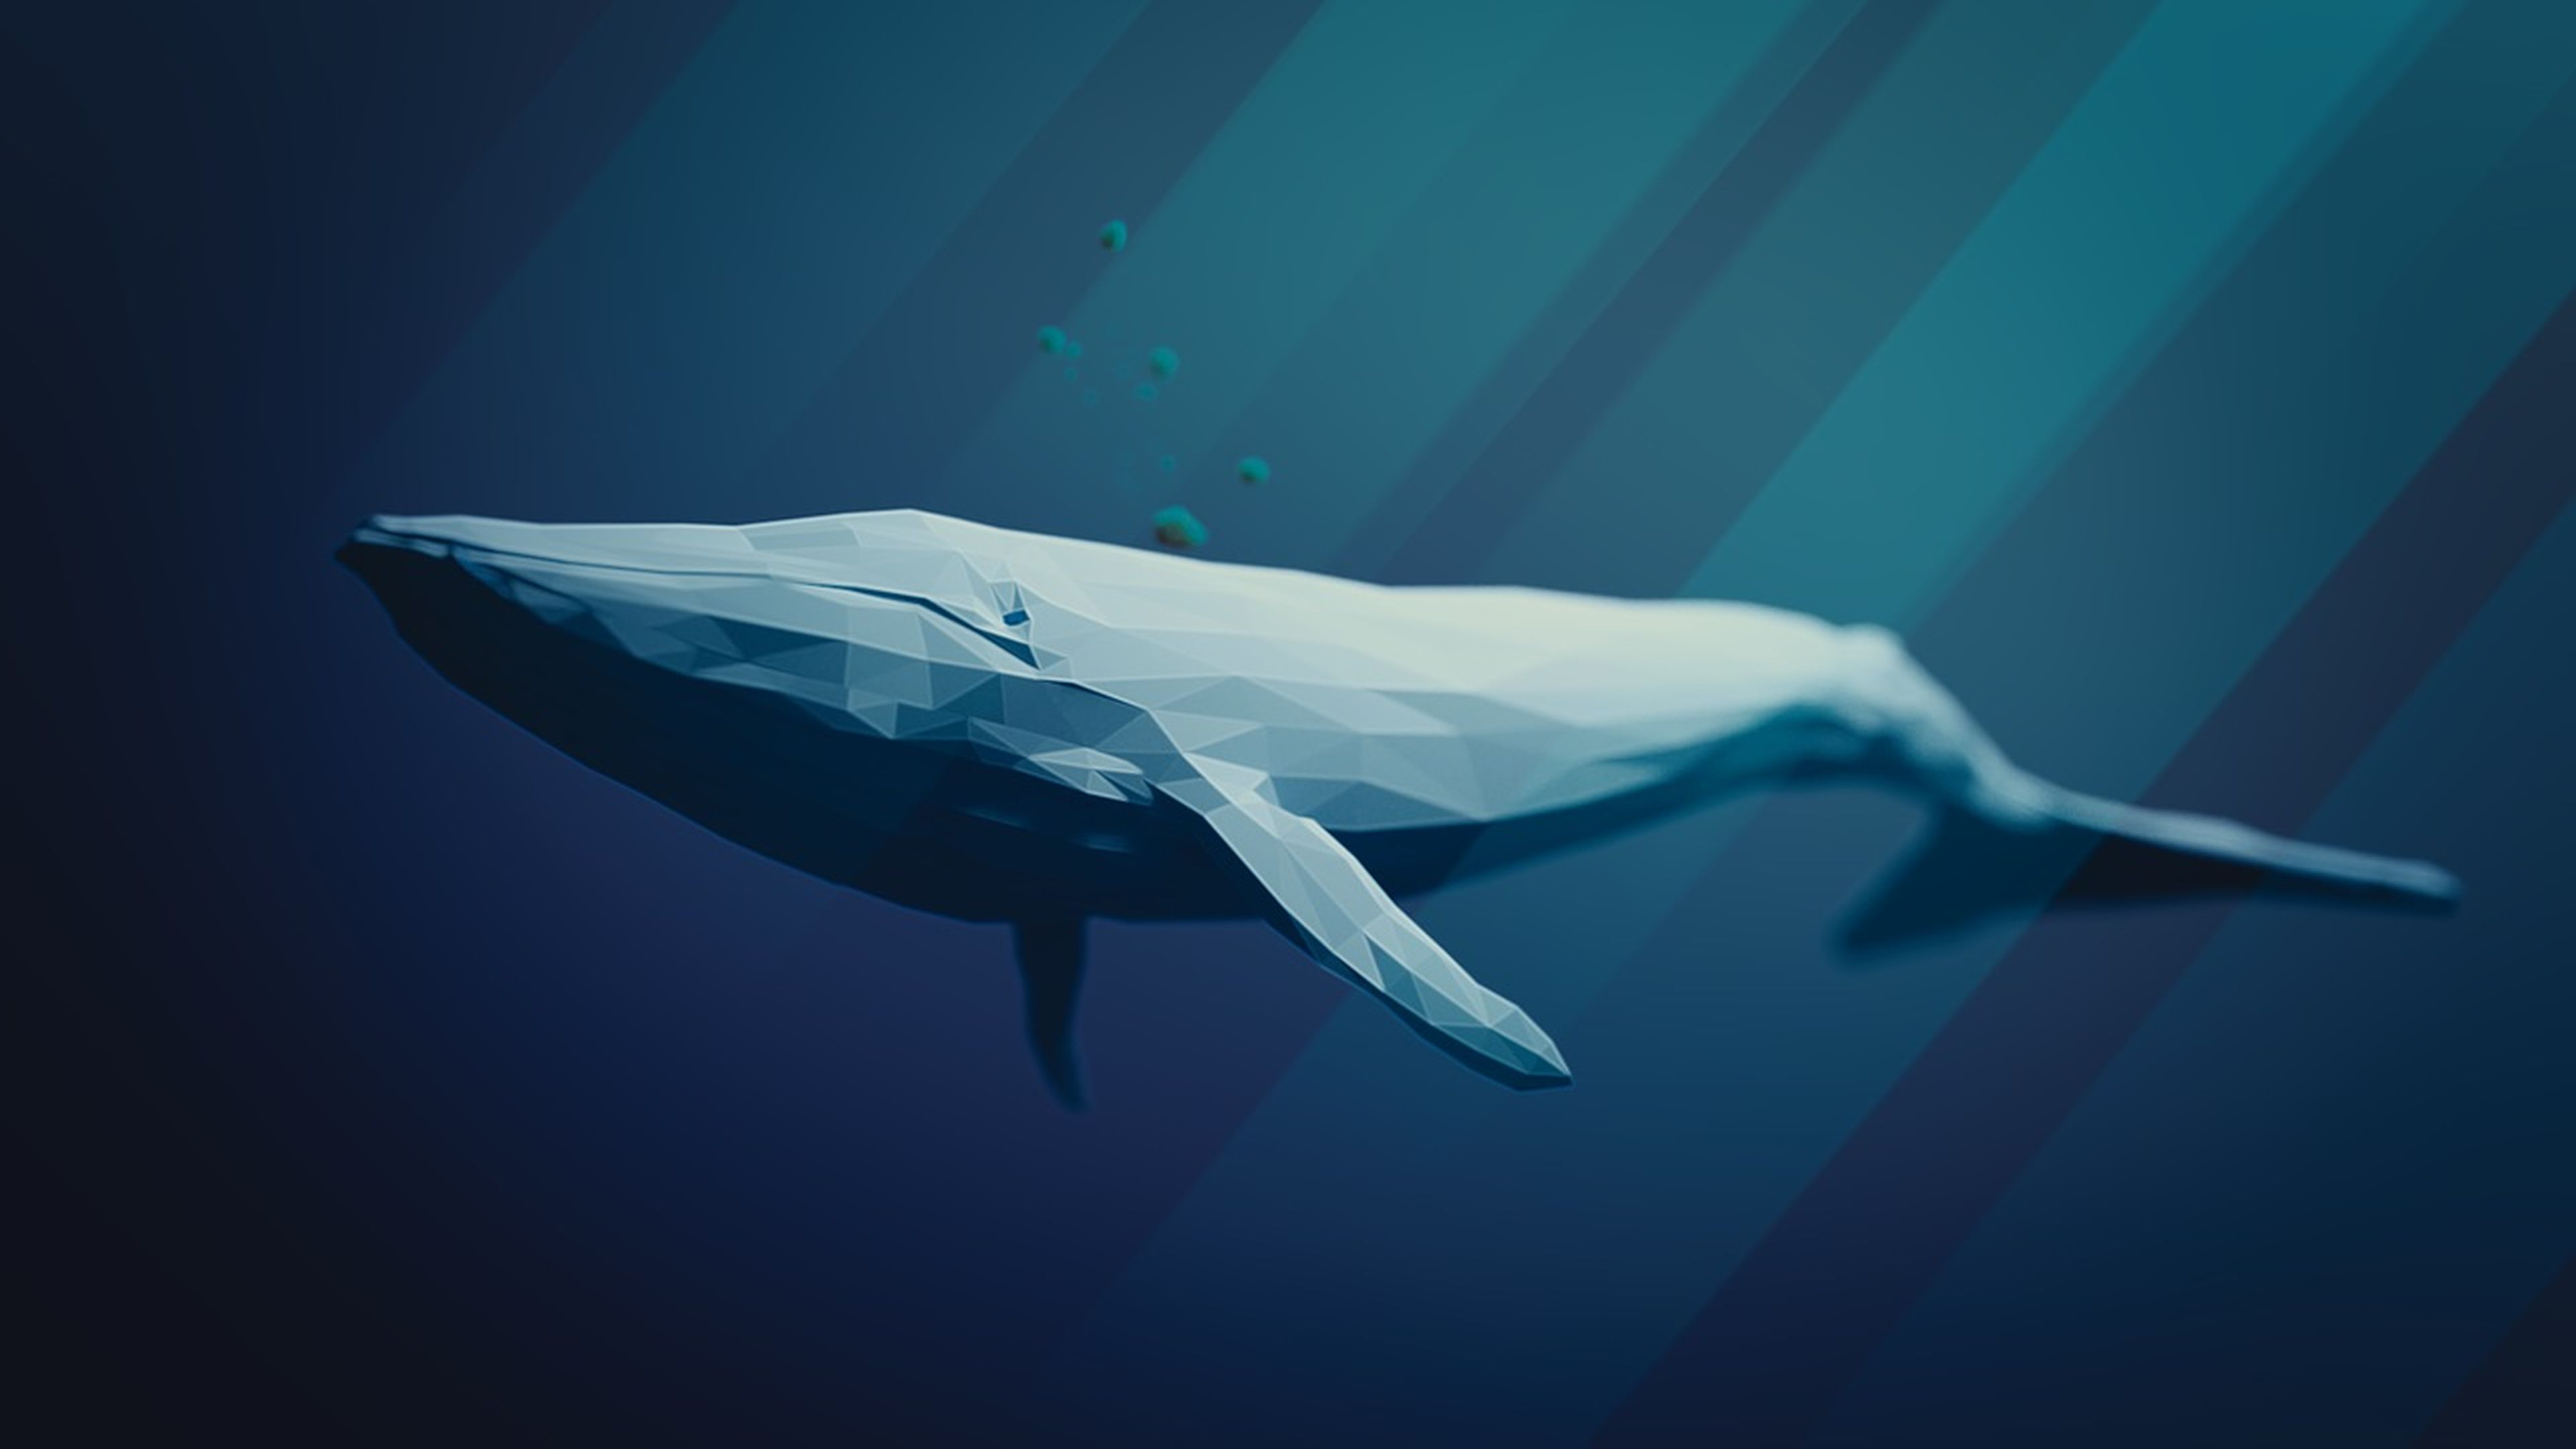 ballena azul